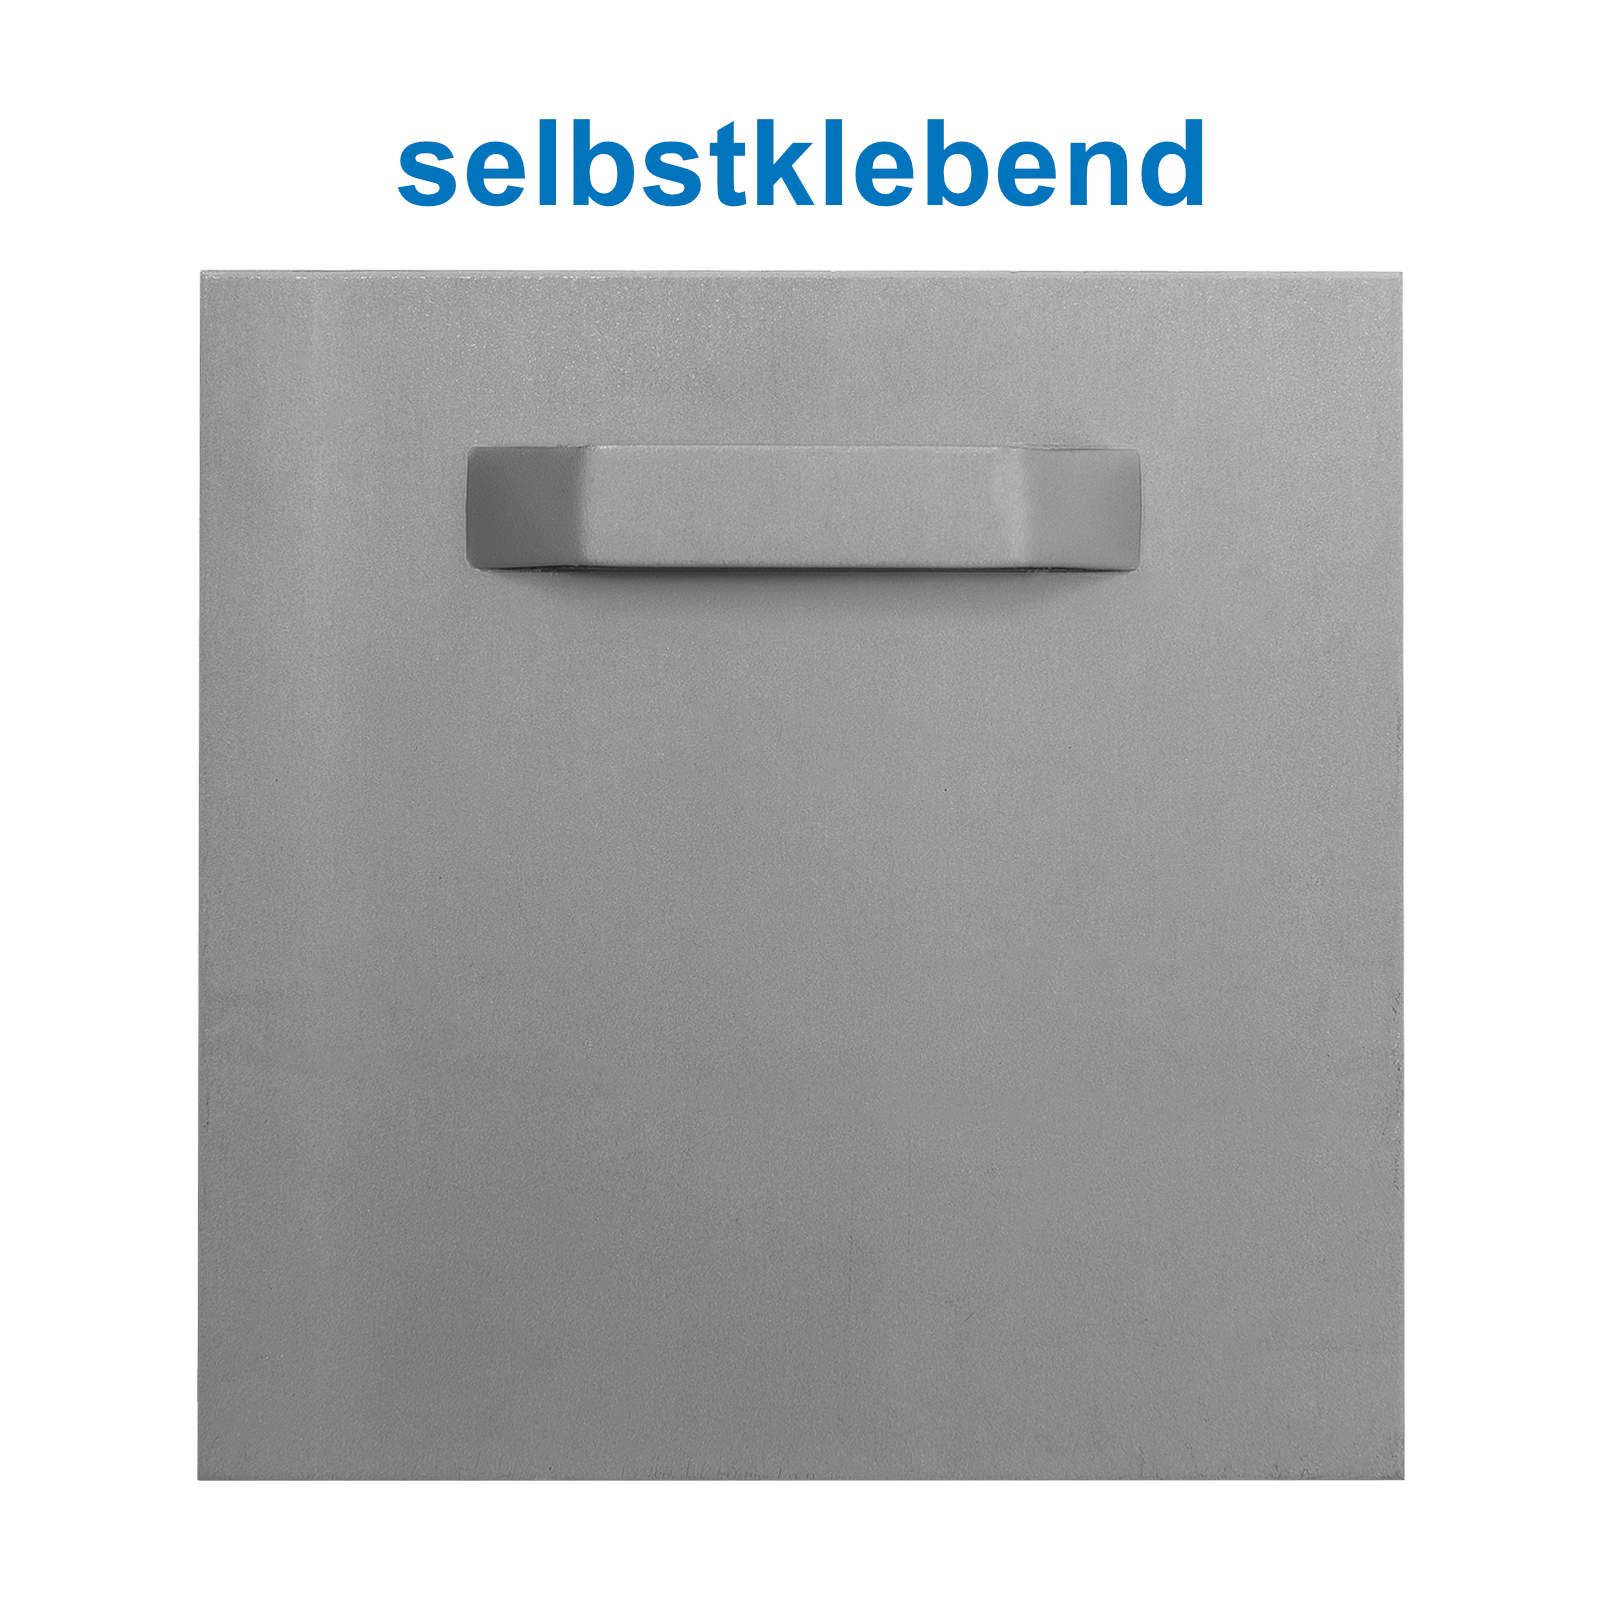 Leha Spiegelblech /Aufhängeblech 100 x 100 mm, selbstklebend